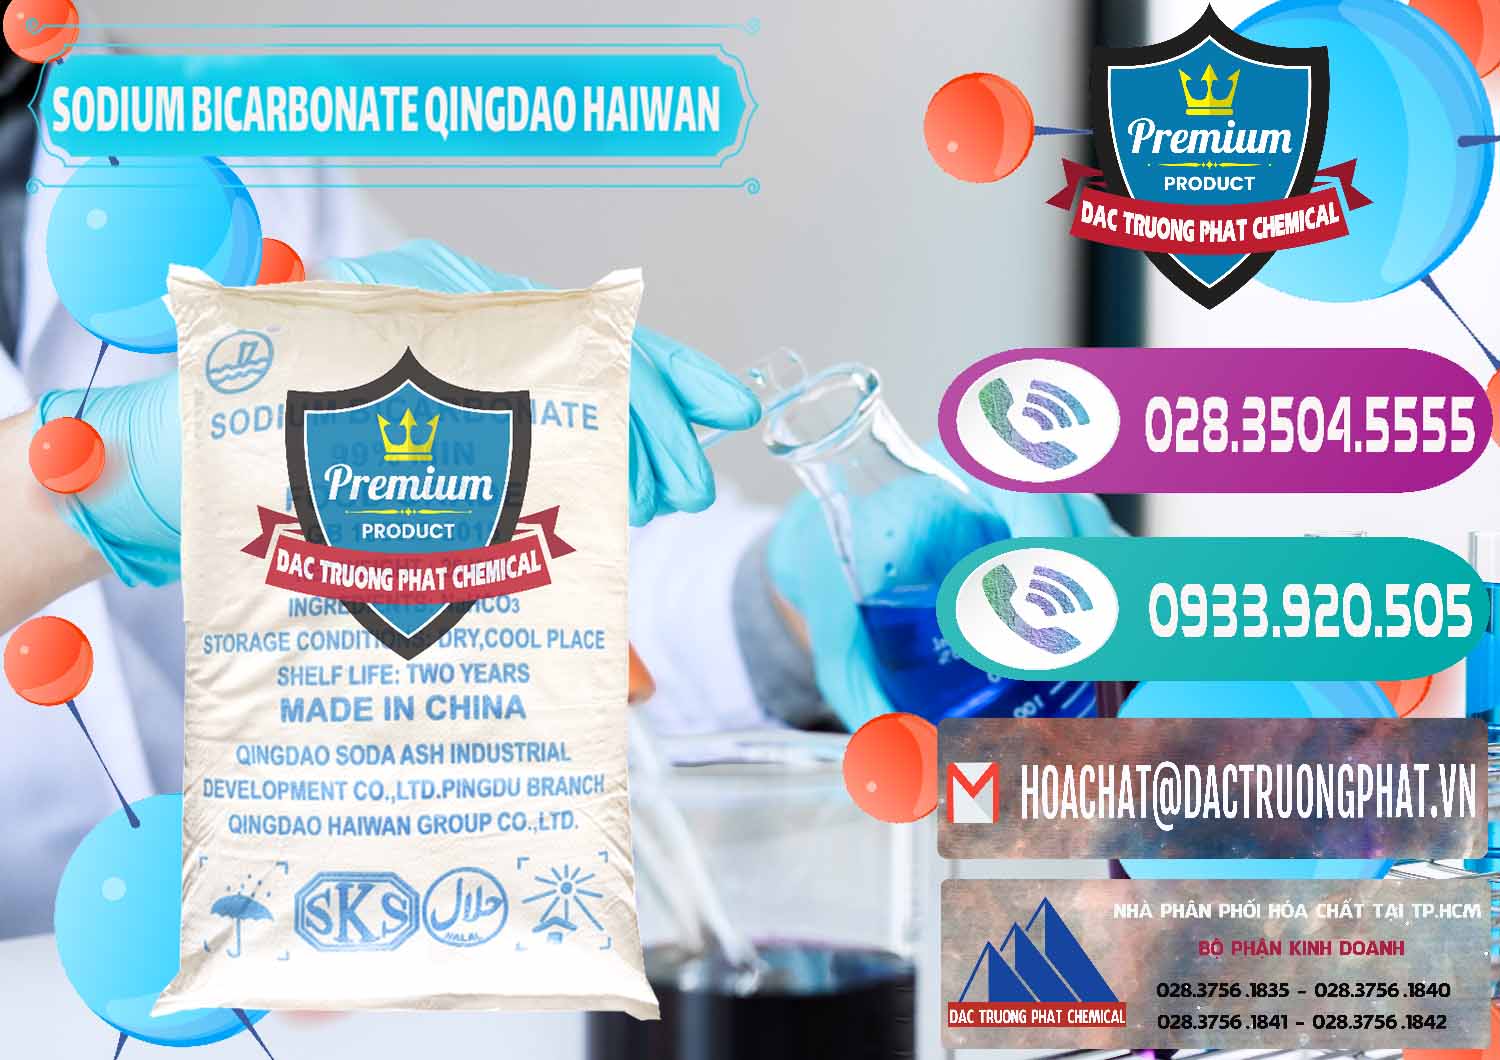 Cty nhập khẩu - bán Sodium Bicarbonate – Bicar NaHCO3 Food Grade Qingdao Haiwan Trung Quốc China - 0258 - Chuyên phân phối - bán hóa chất tại TP.HCM - hoachatxulynuoc.com